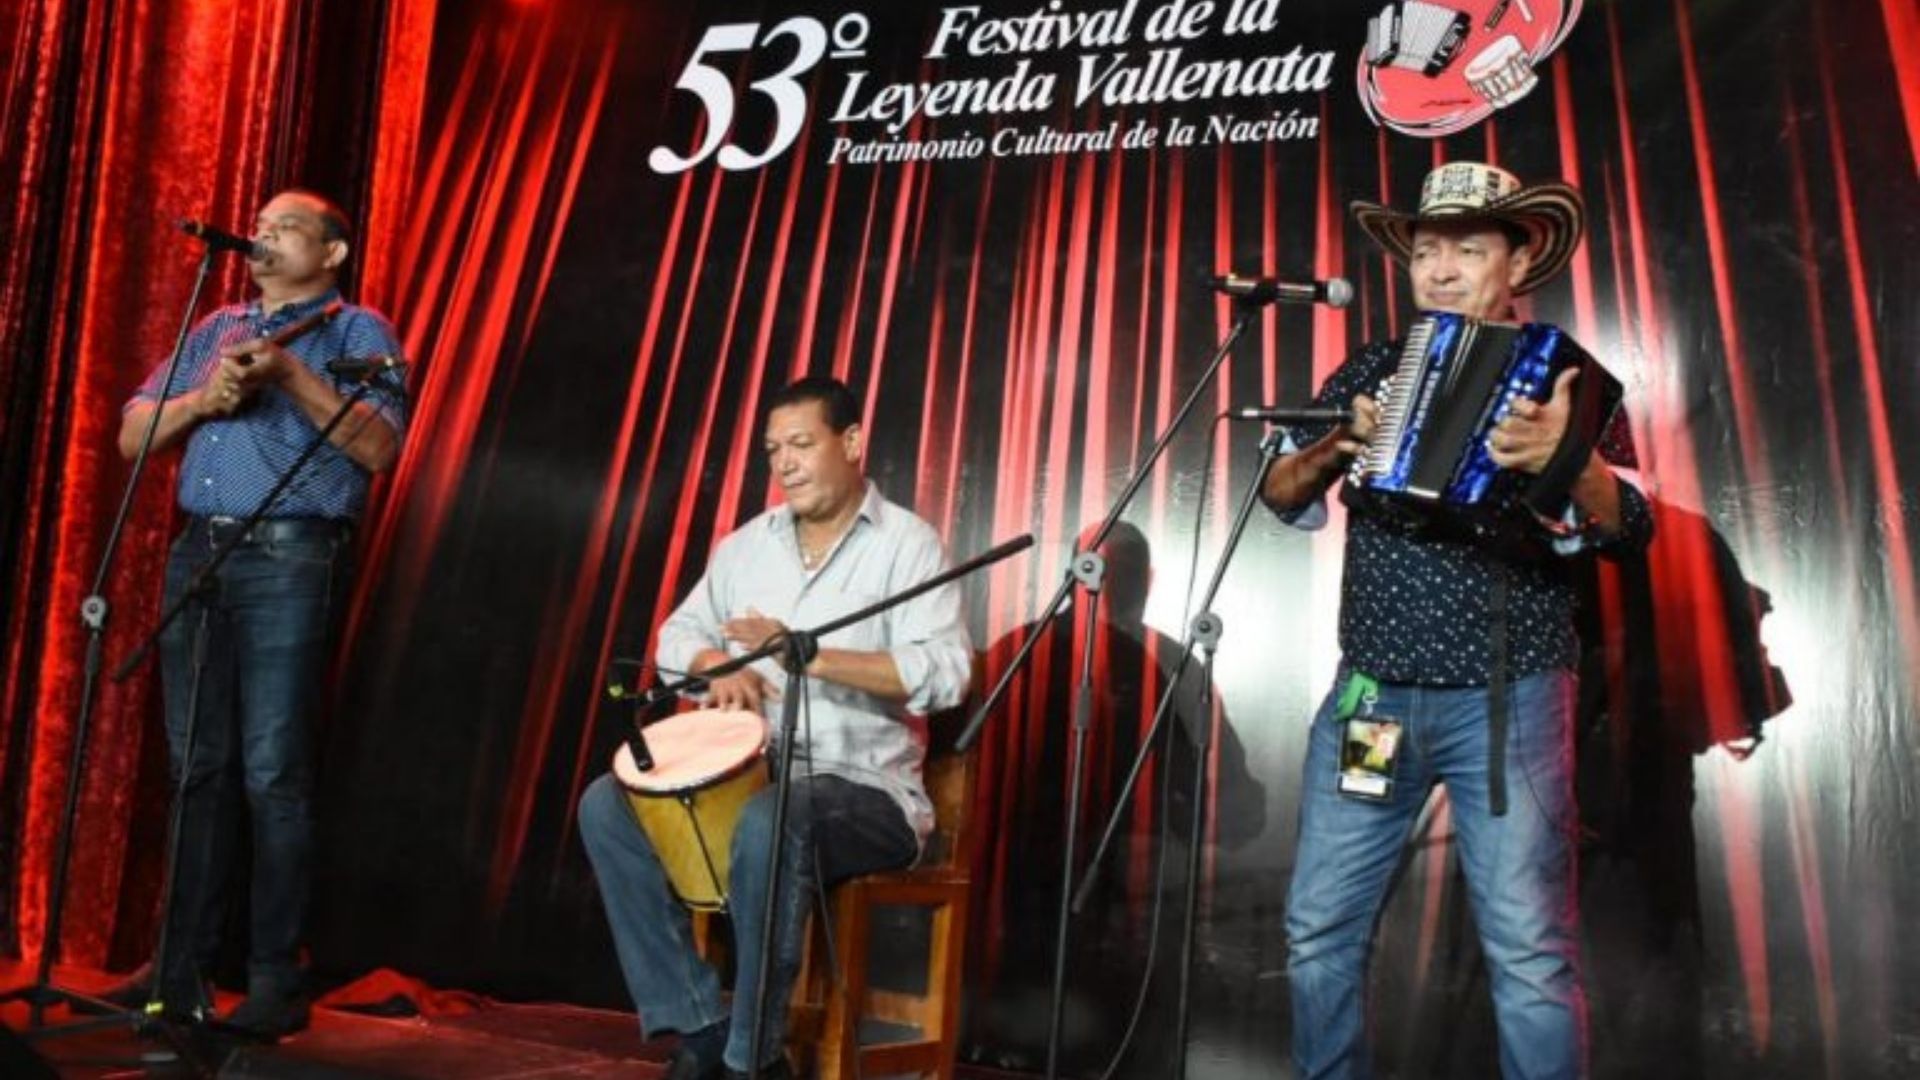 La edición número 53 del Festival de la Leyenda Vallenata es la primera en realizarse virtualmente.